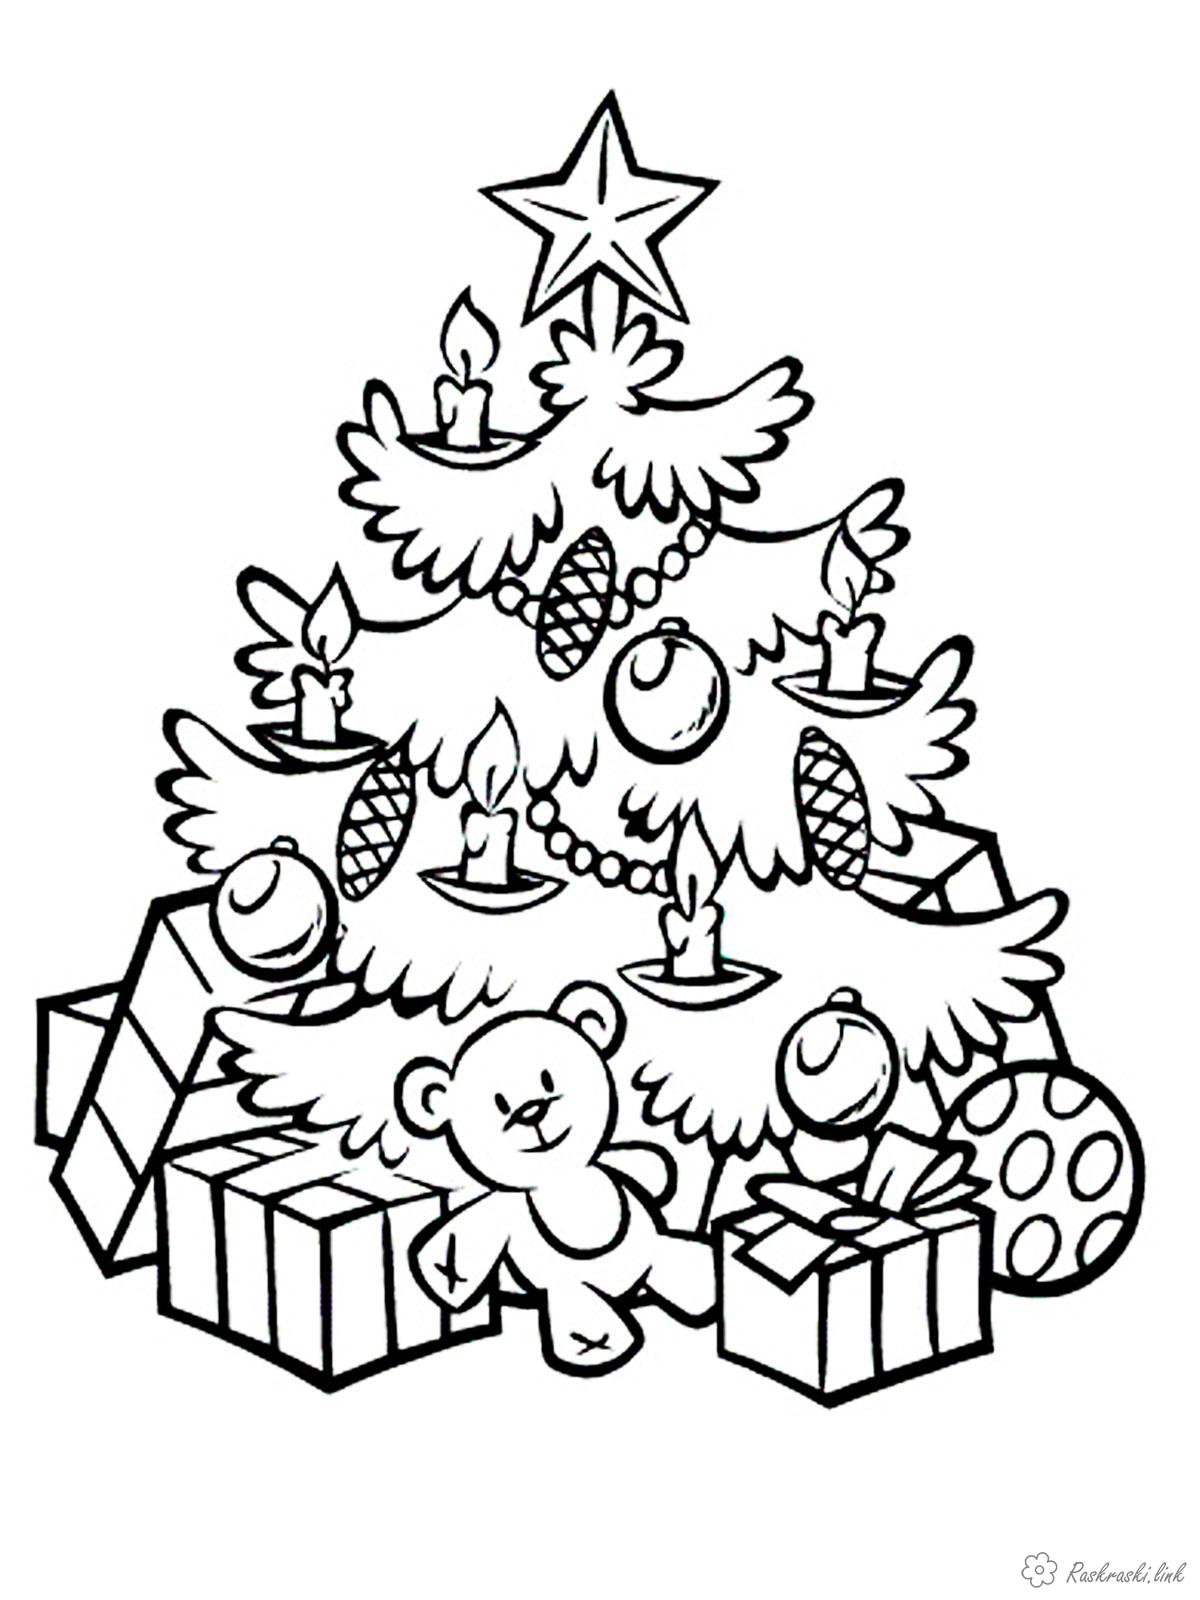 Раскраски Новый год Детская новогодняя раскраска нарядная елочка с подарками